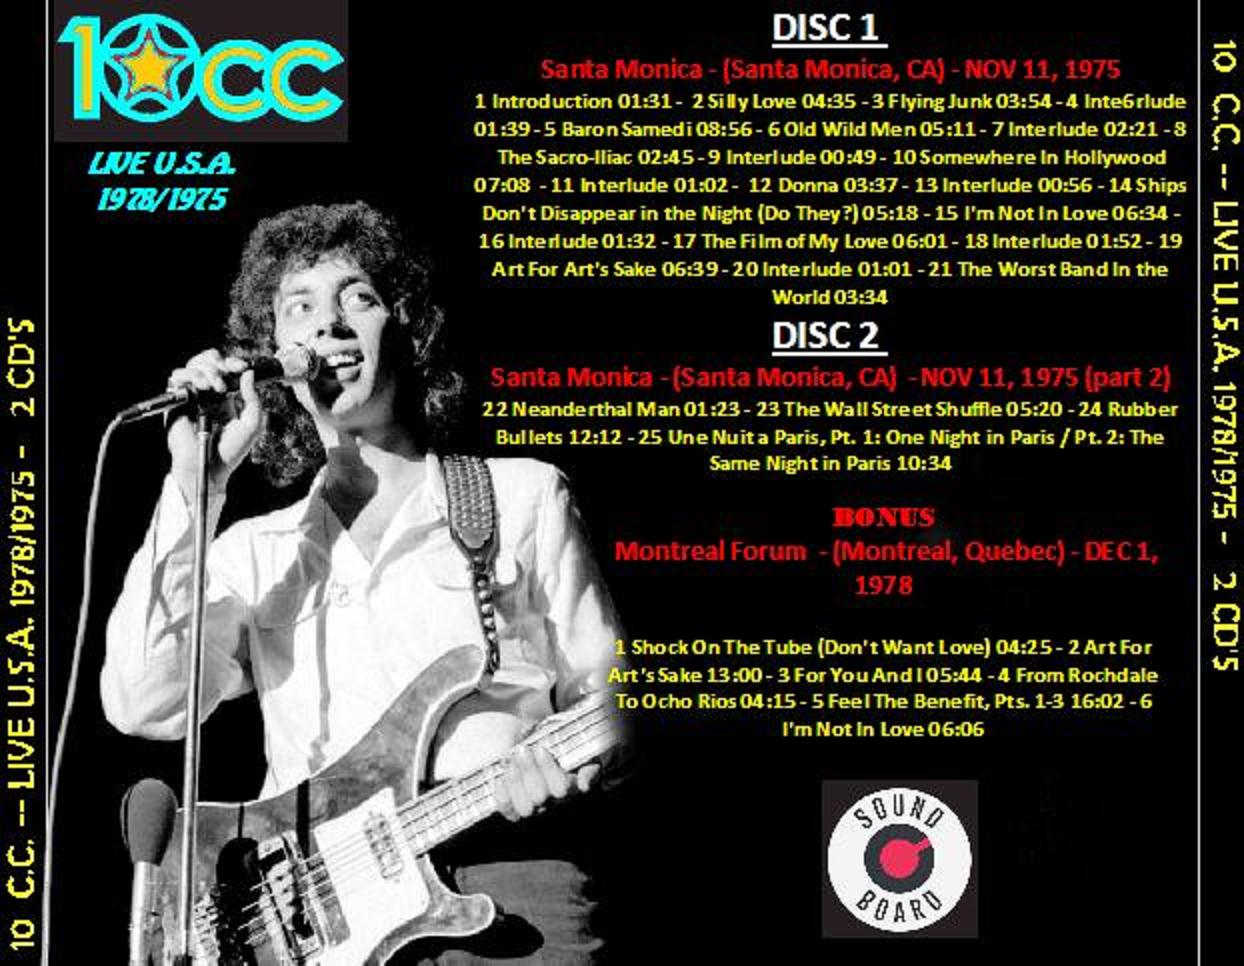 10CC - Discography (1973-2012).rar